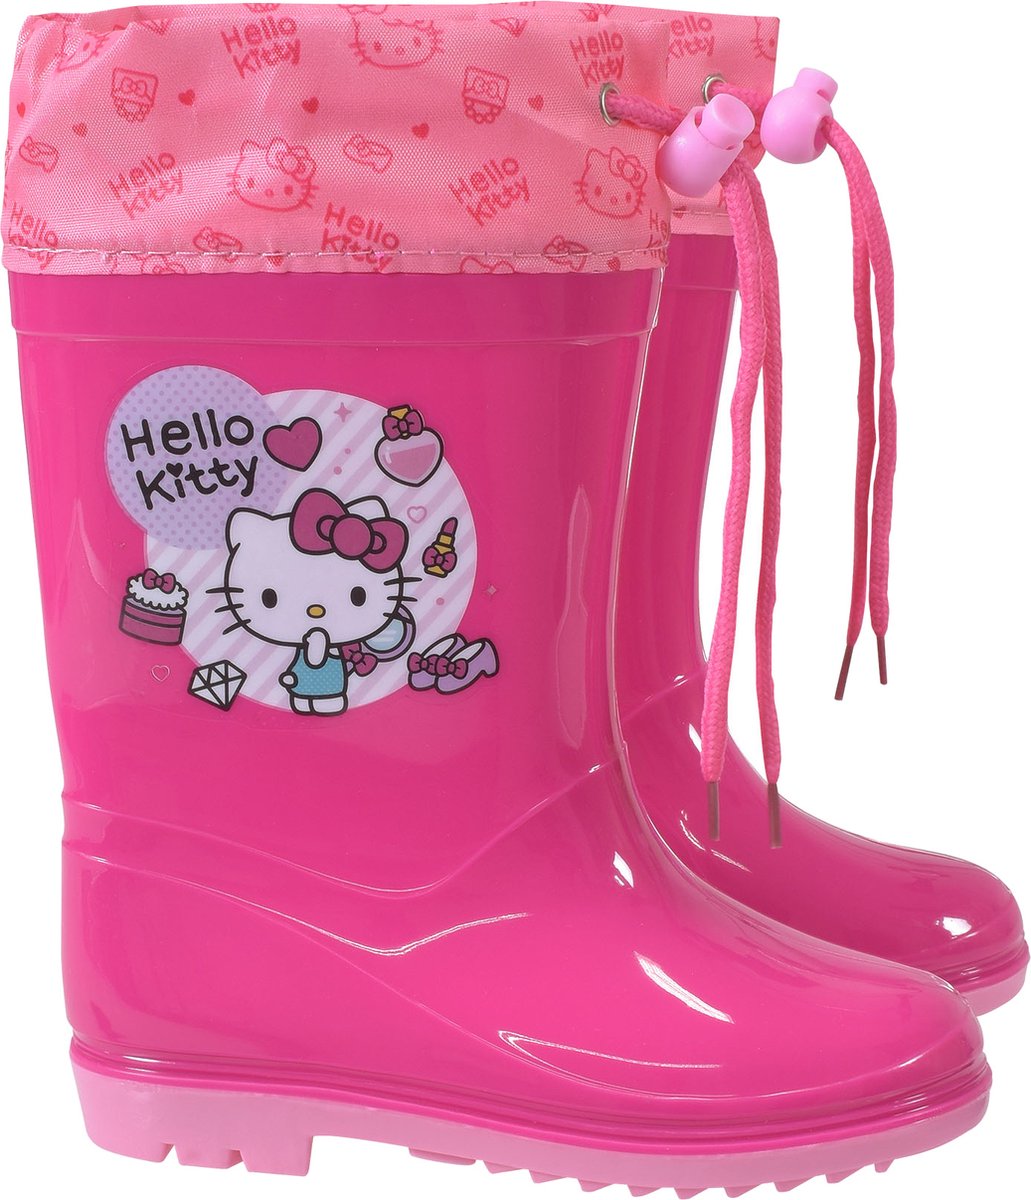 Stamion Regenlaarzen Hello Kitty meisjes Pvc Roze/paars Maat 30-31